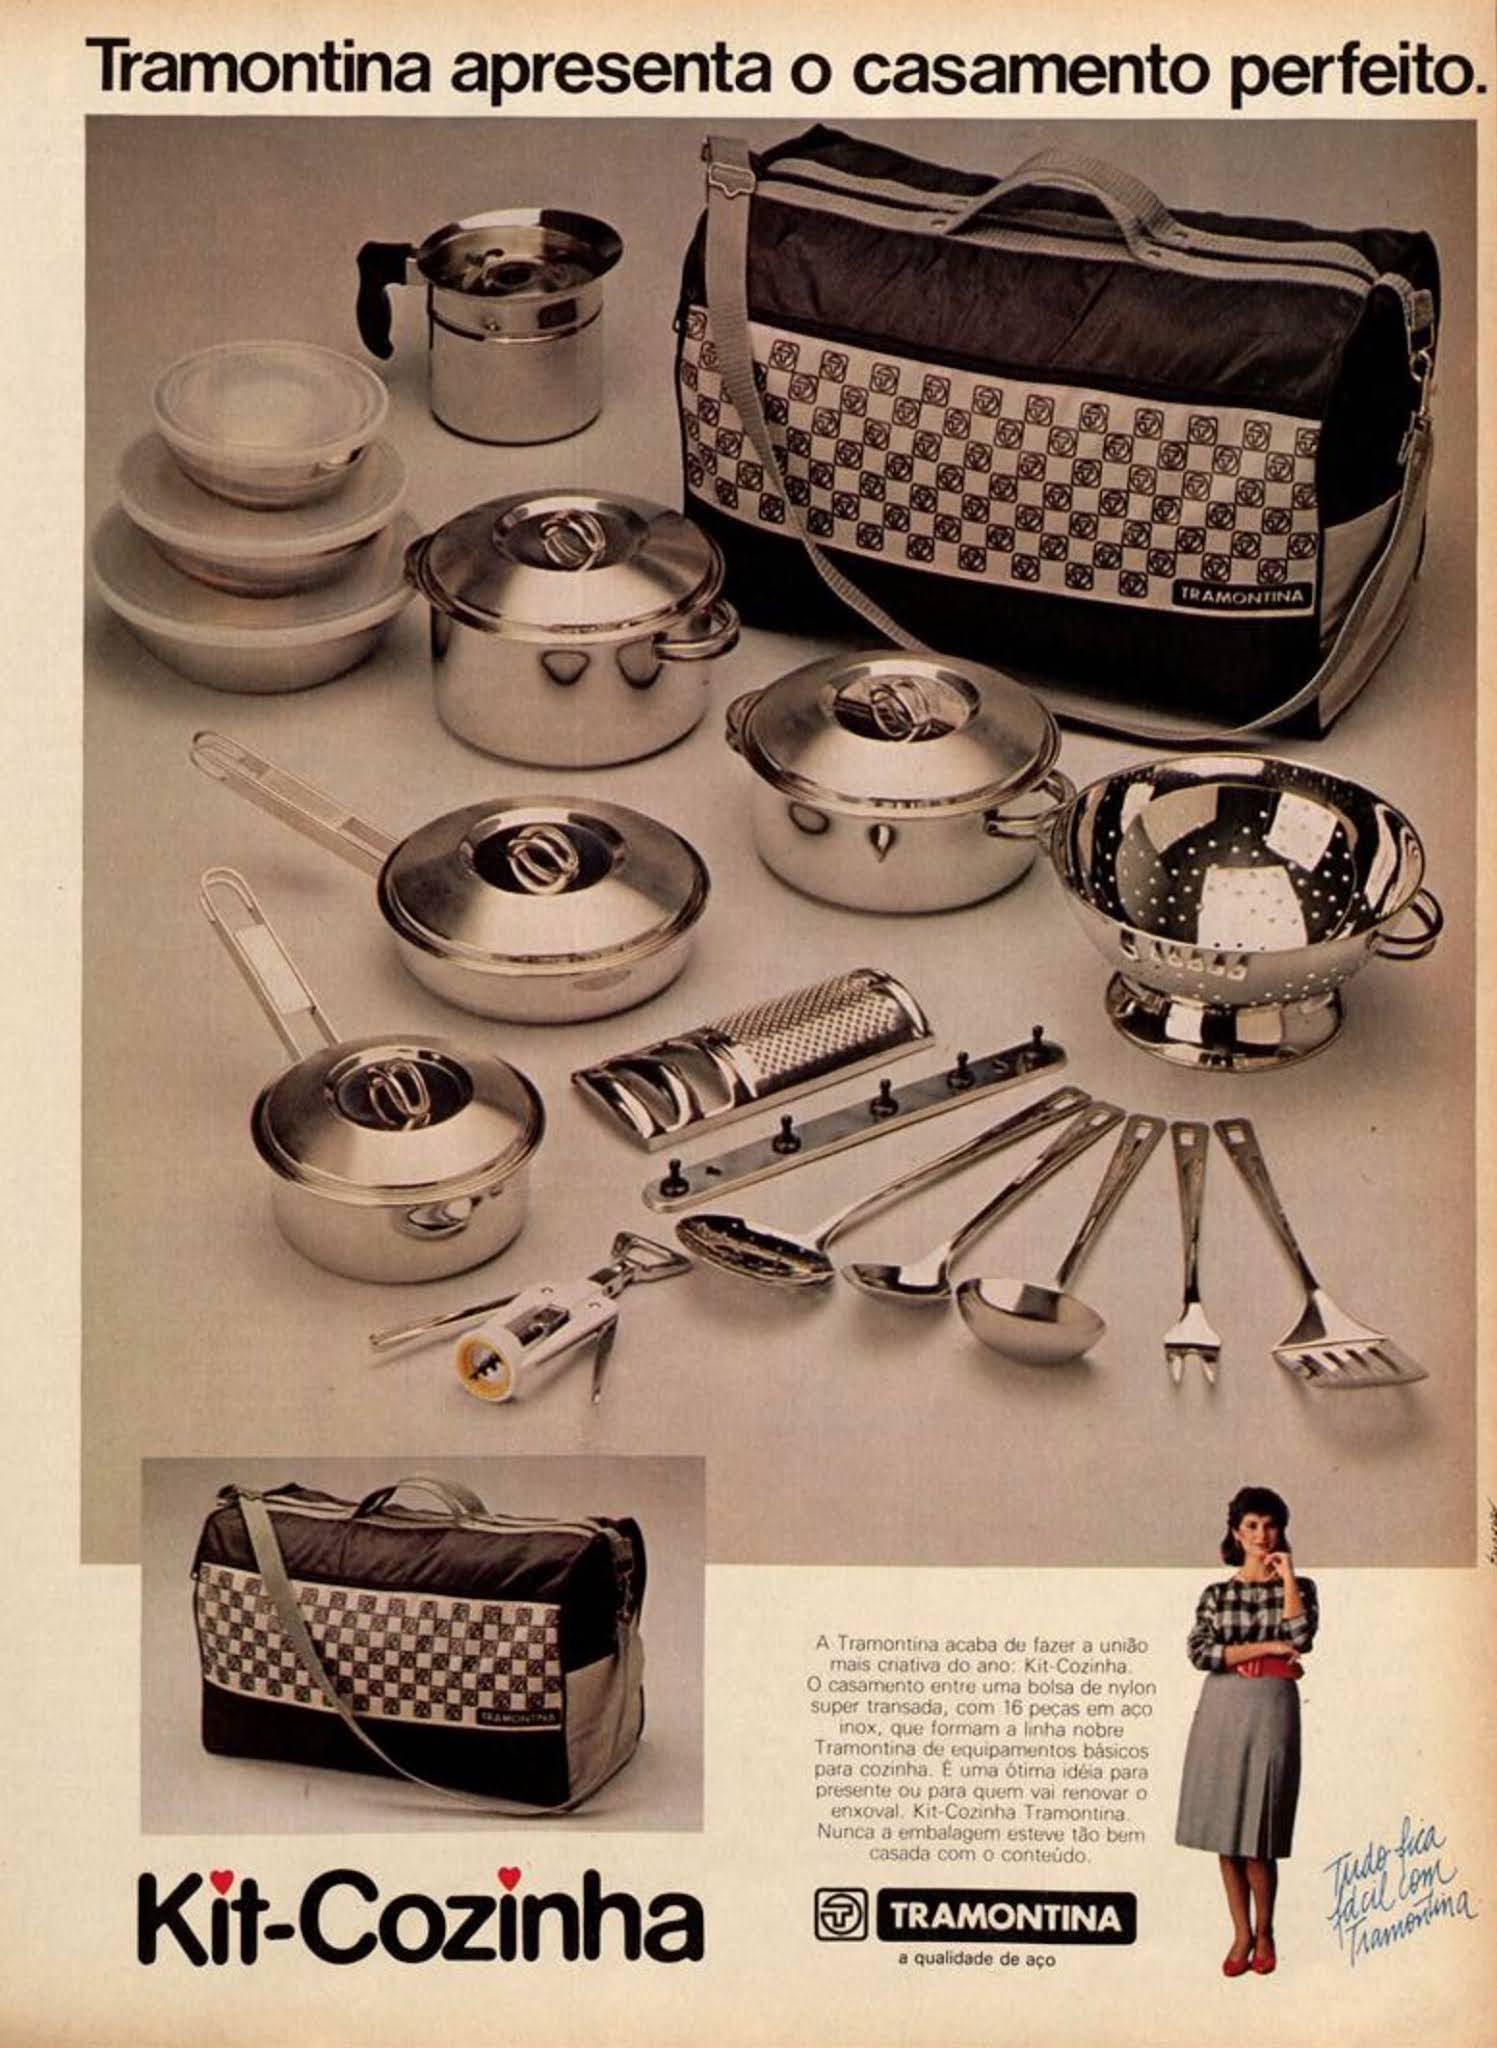 Anúncio veiculado em 1984 pela Tramontina promovendo o Kit Cozinha